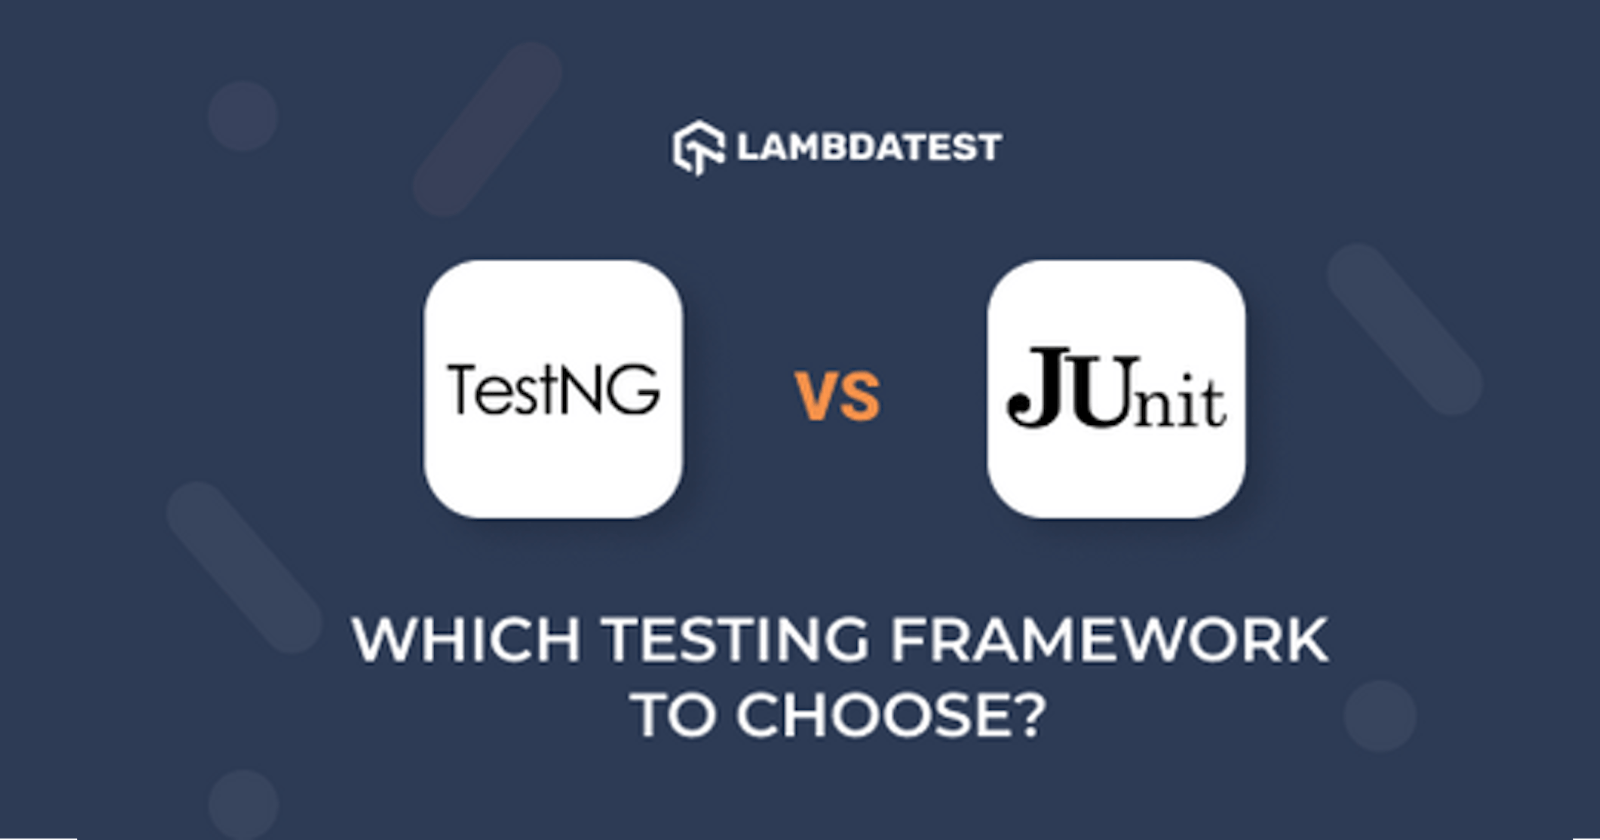 TestNG vs JUnit : Which testing framework should you choose?